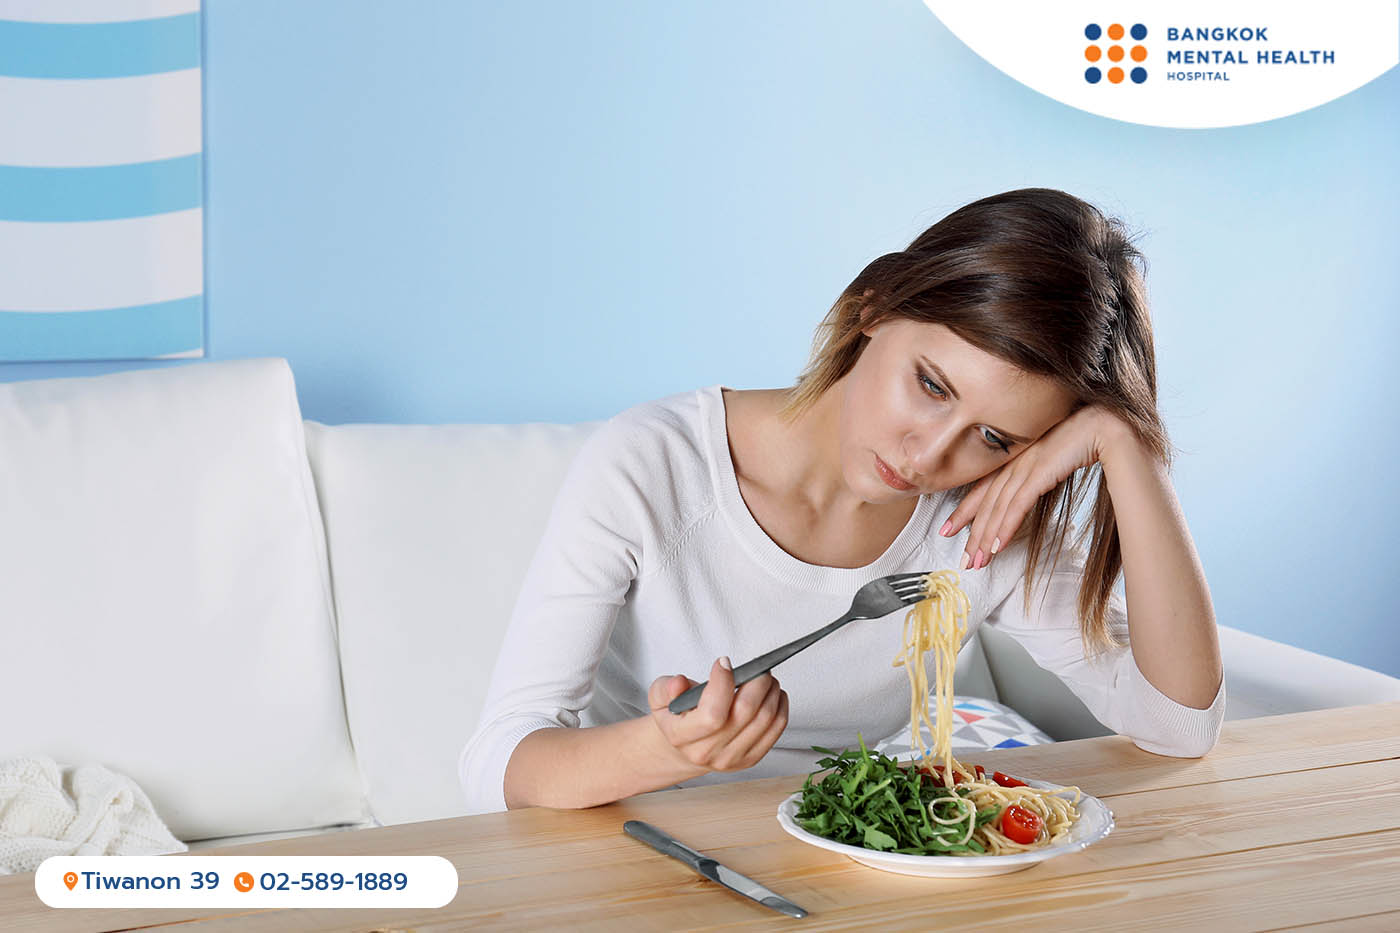 ผู้ป่วยไม่อยากกินอาหาร เนื่องจากมีภาวะ Eating Disorder หรือพฤติกรรมการกินอาหารที่ผิดปกติ